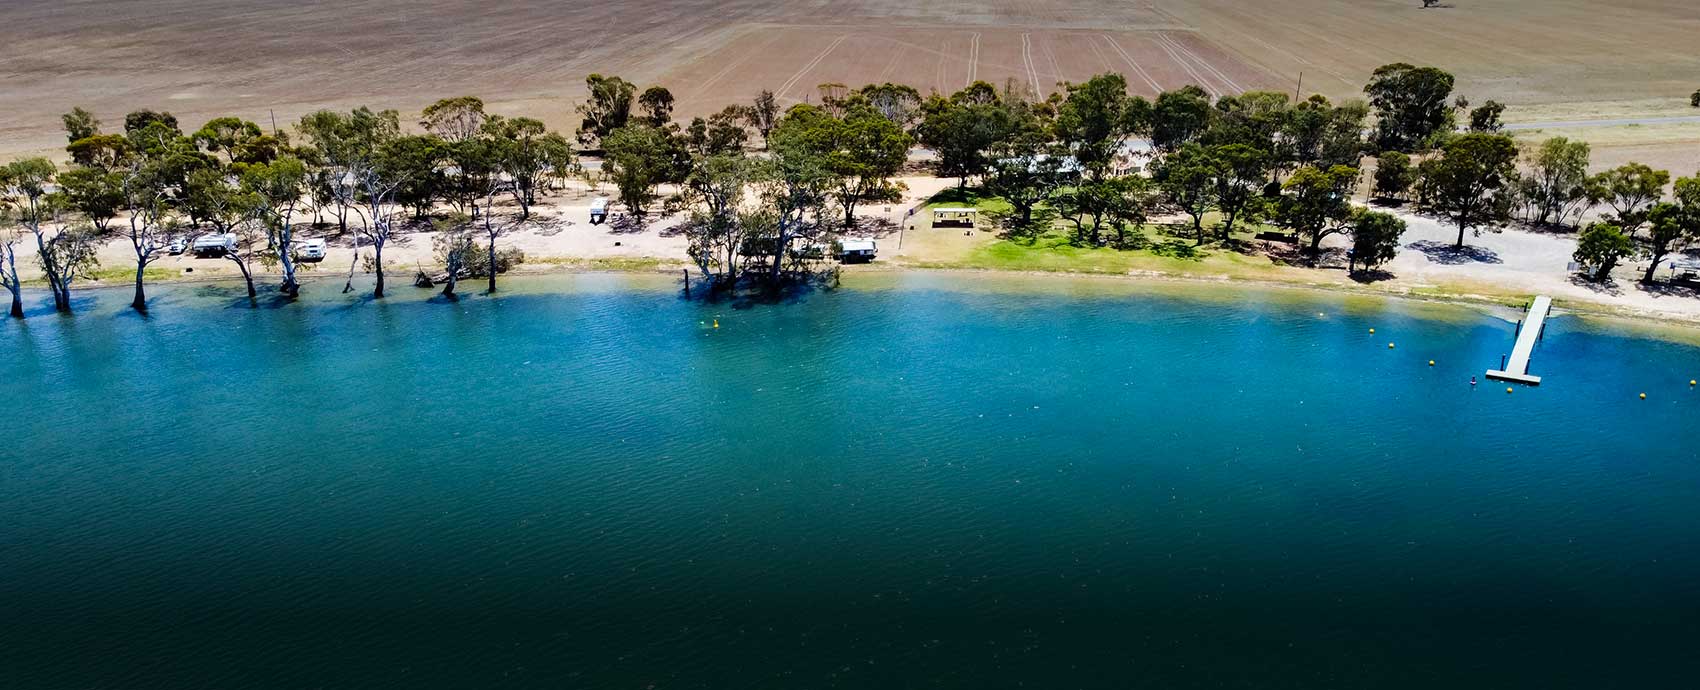 Aerial view of Lake Wooroonook, Buloke Shire